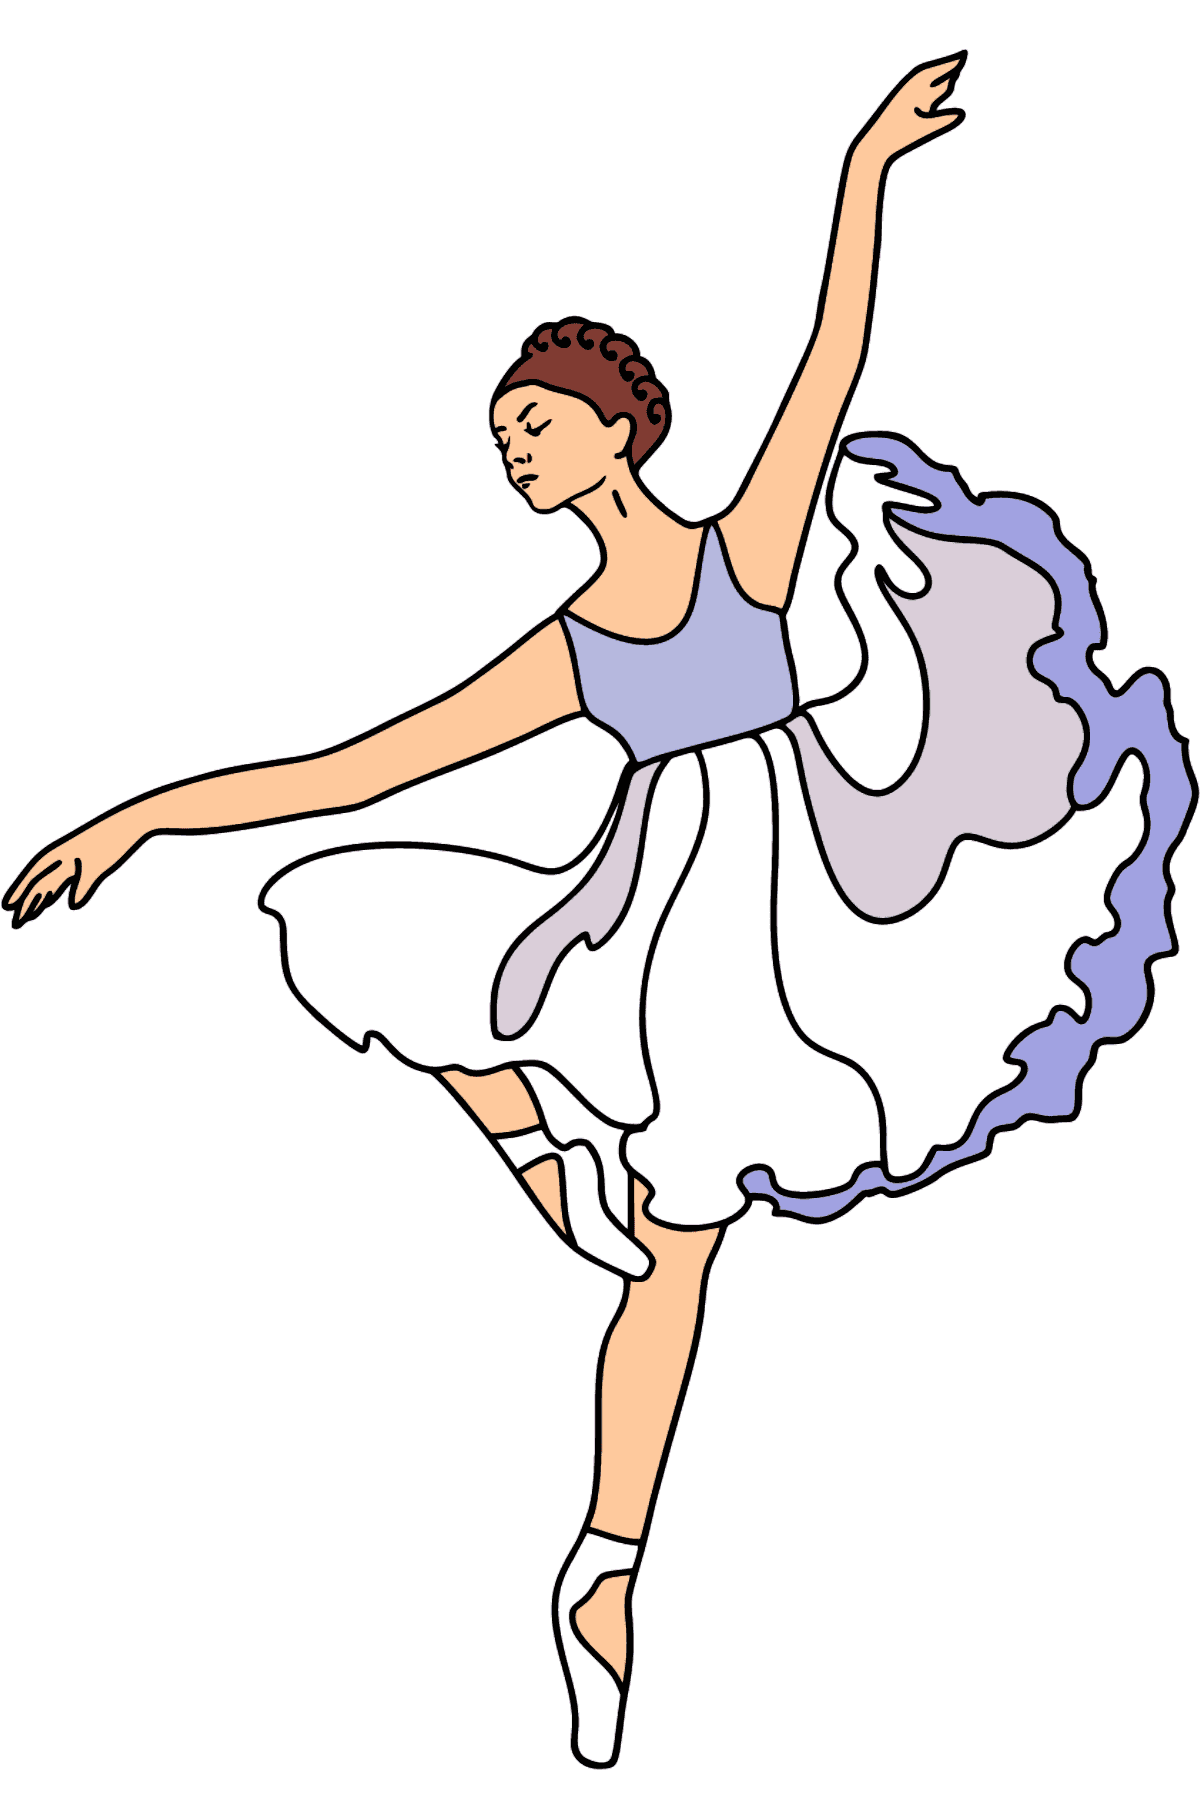 Disegno di Ballerina Carina da colorare - Disegni da colorare per bambini